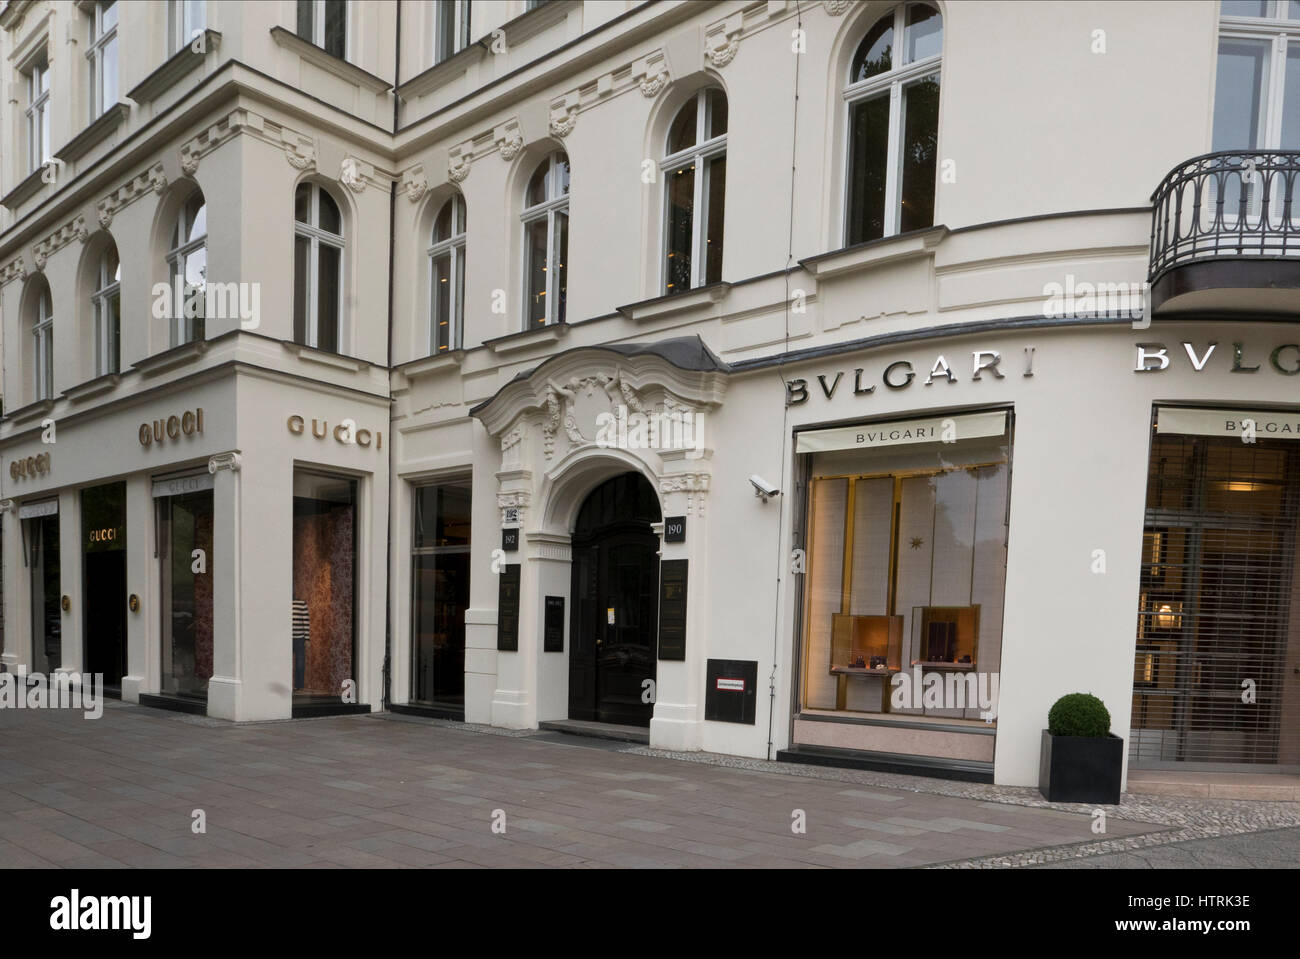 Das äußere des eine luxuriöse Gucci Shop, Berlin, Deutschland  Stockfotografie - Alamy